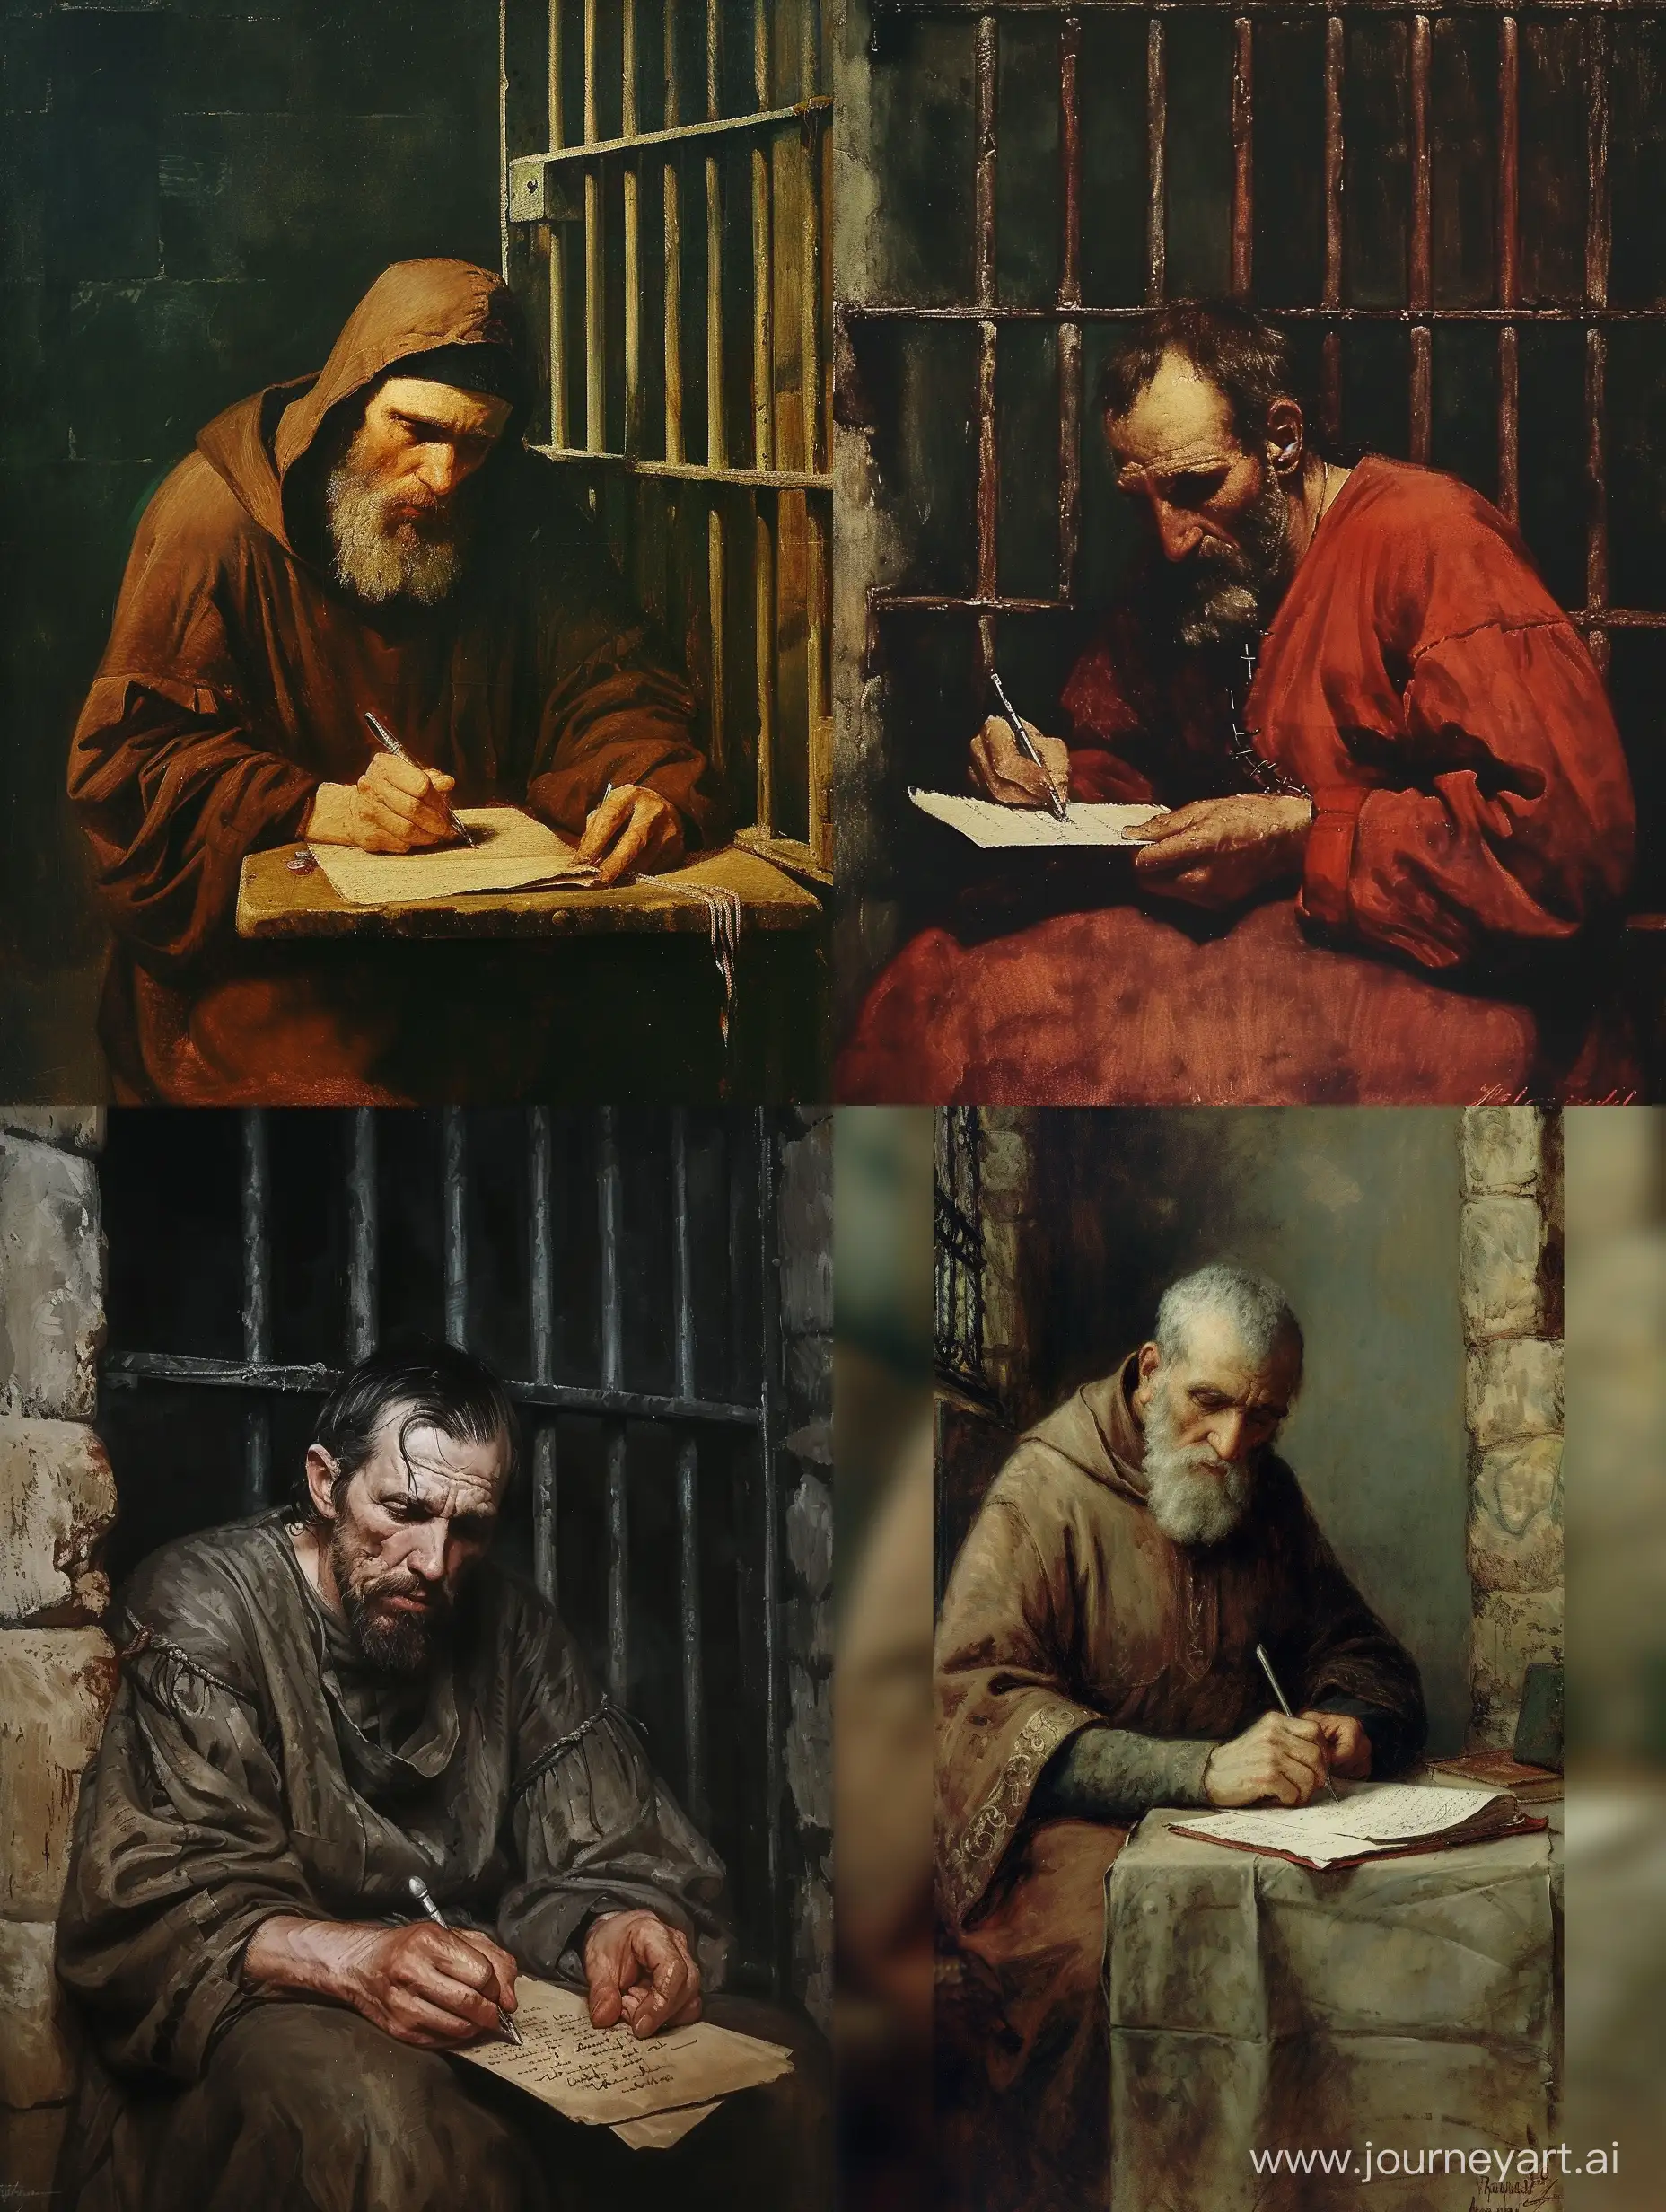 تصویری از کشیش ولنتین در حال نوشتن نامه در زندان با حالتی بسیار غمگین